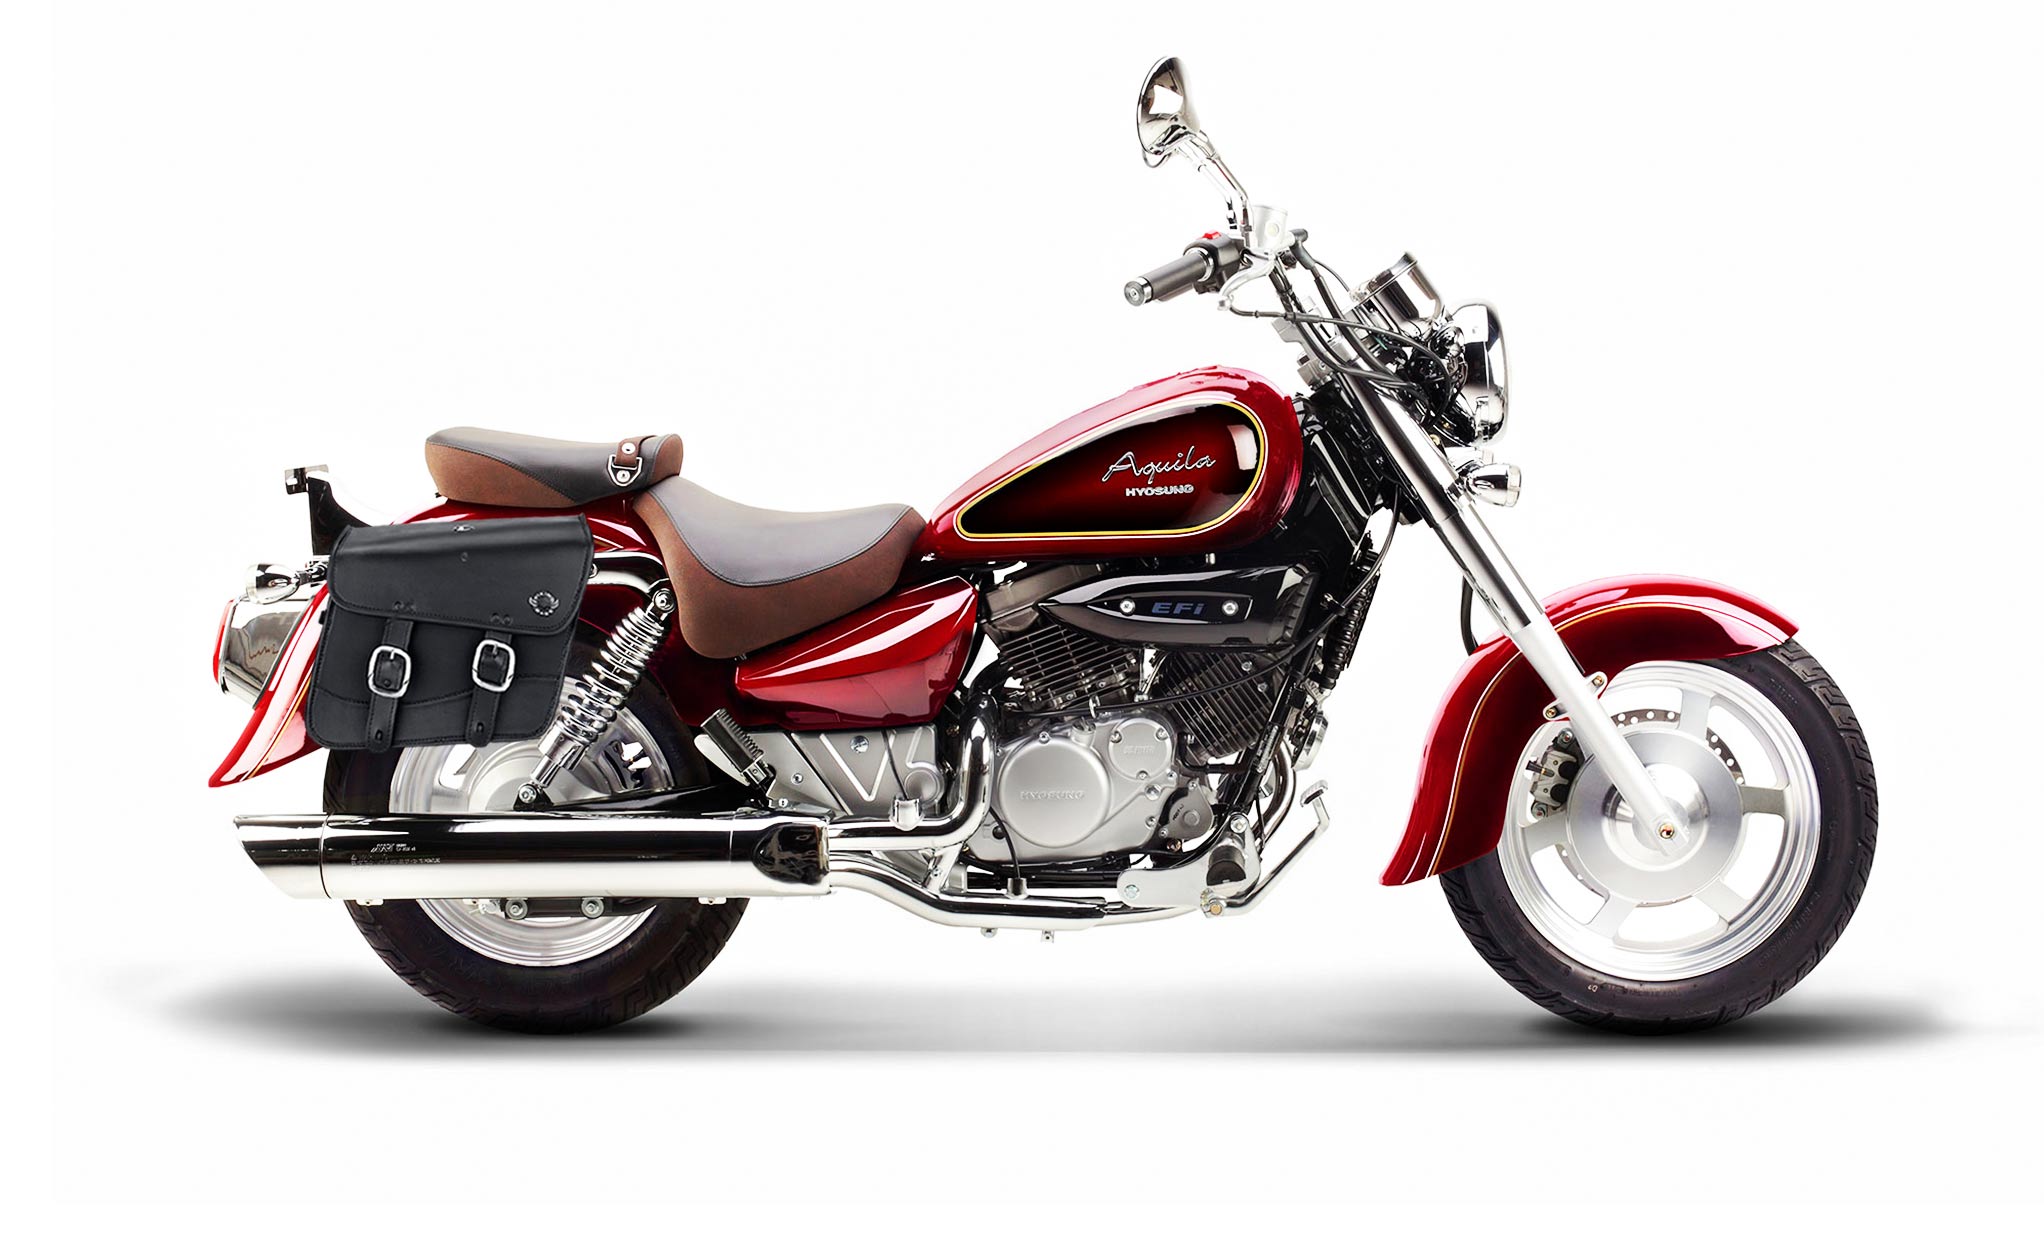 Viking Thor Medium Hyosung Aquila Gv 250 Leather Motorcycle Saddlebags on Bike Photo @expand